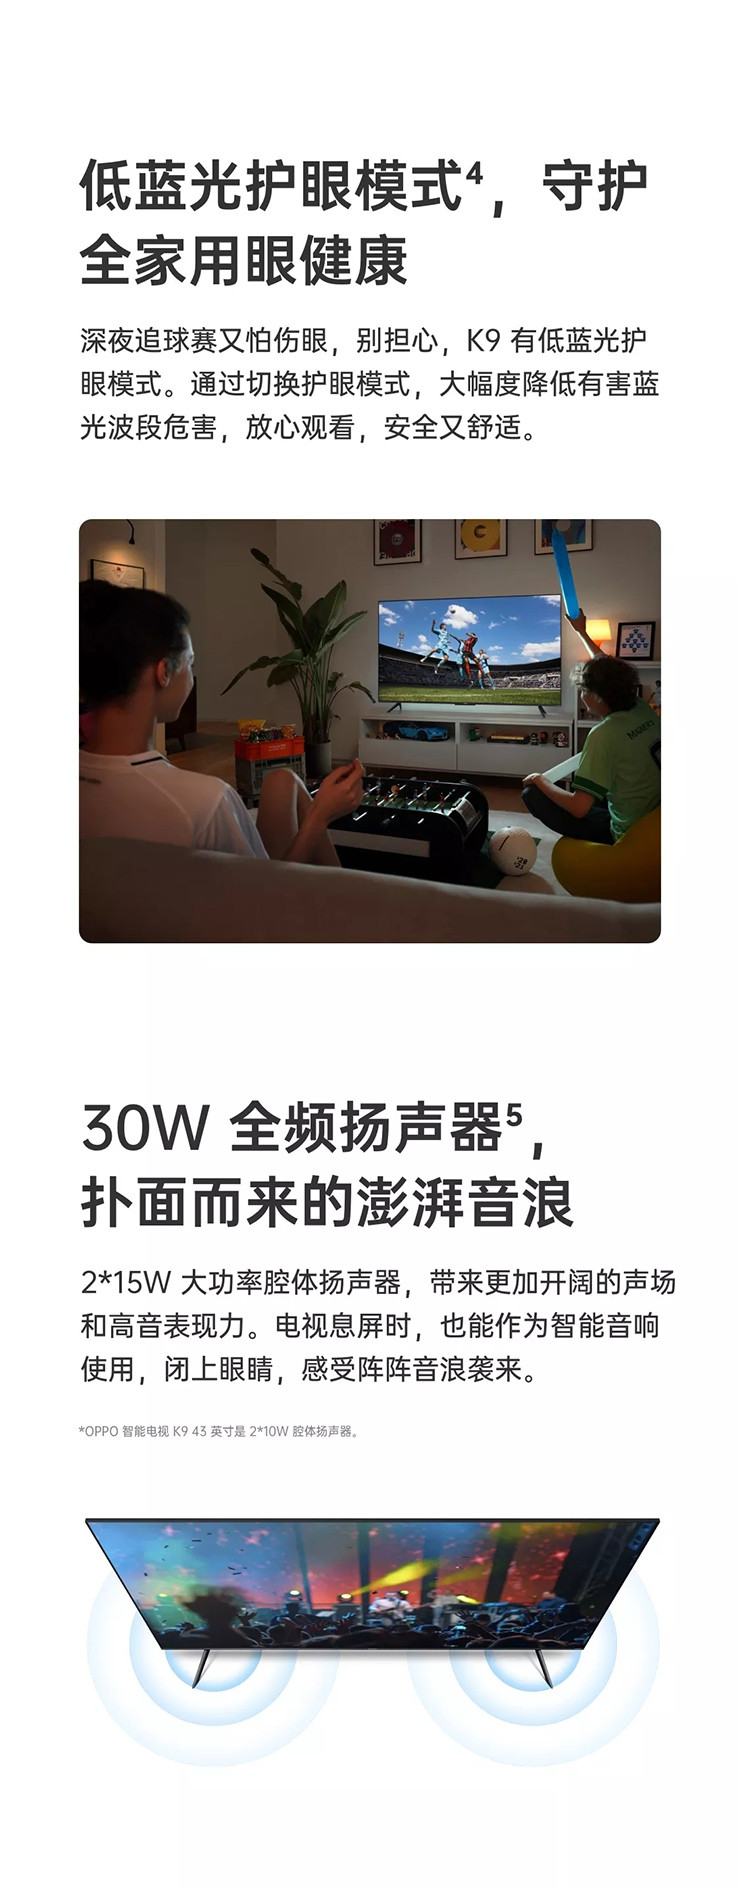 新品OPPO智能电视 K9 65英寸 55英寸 43英寸 出色画质震撼音效平板电视